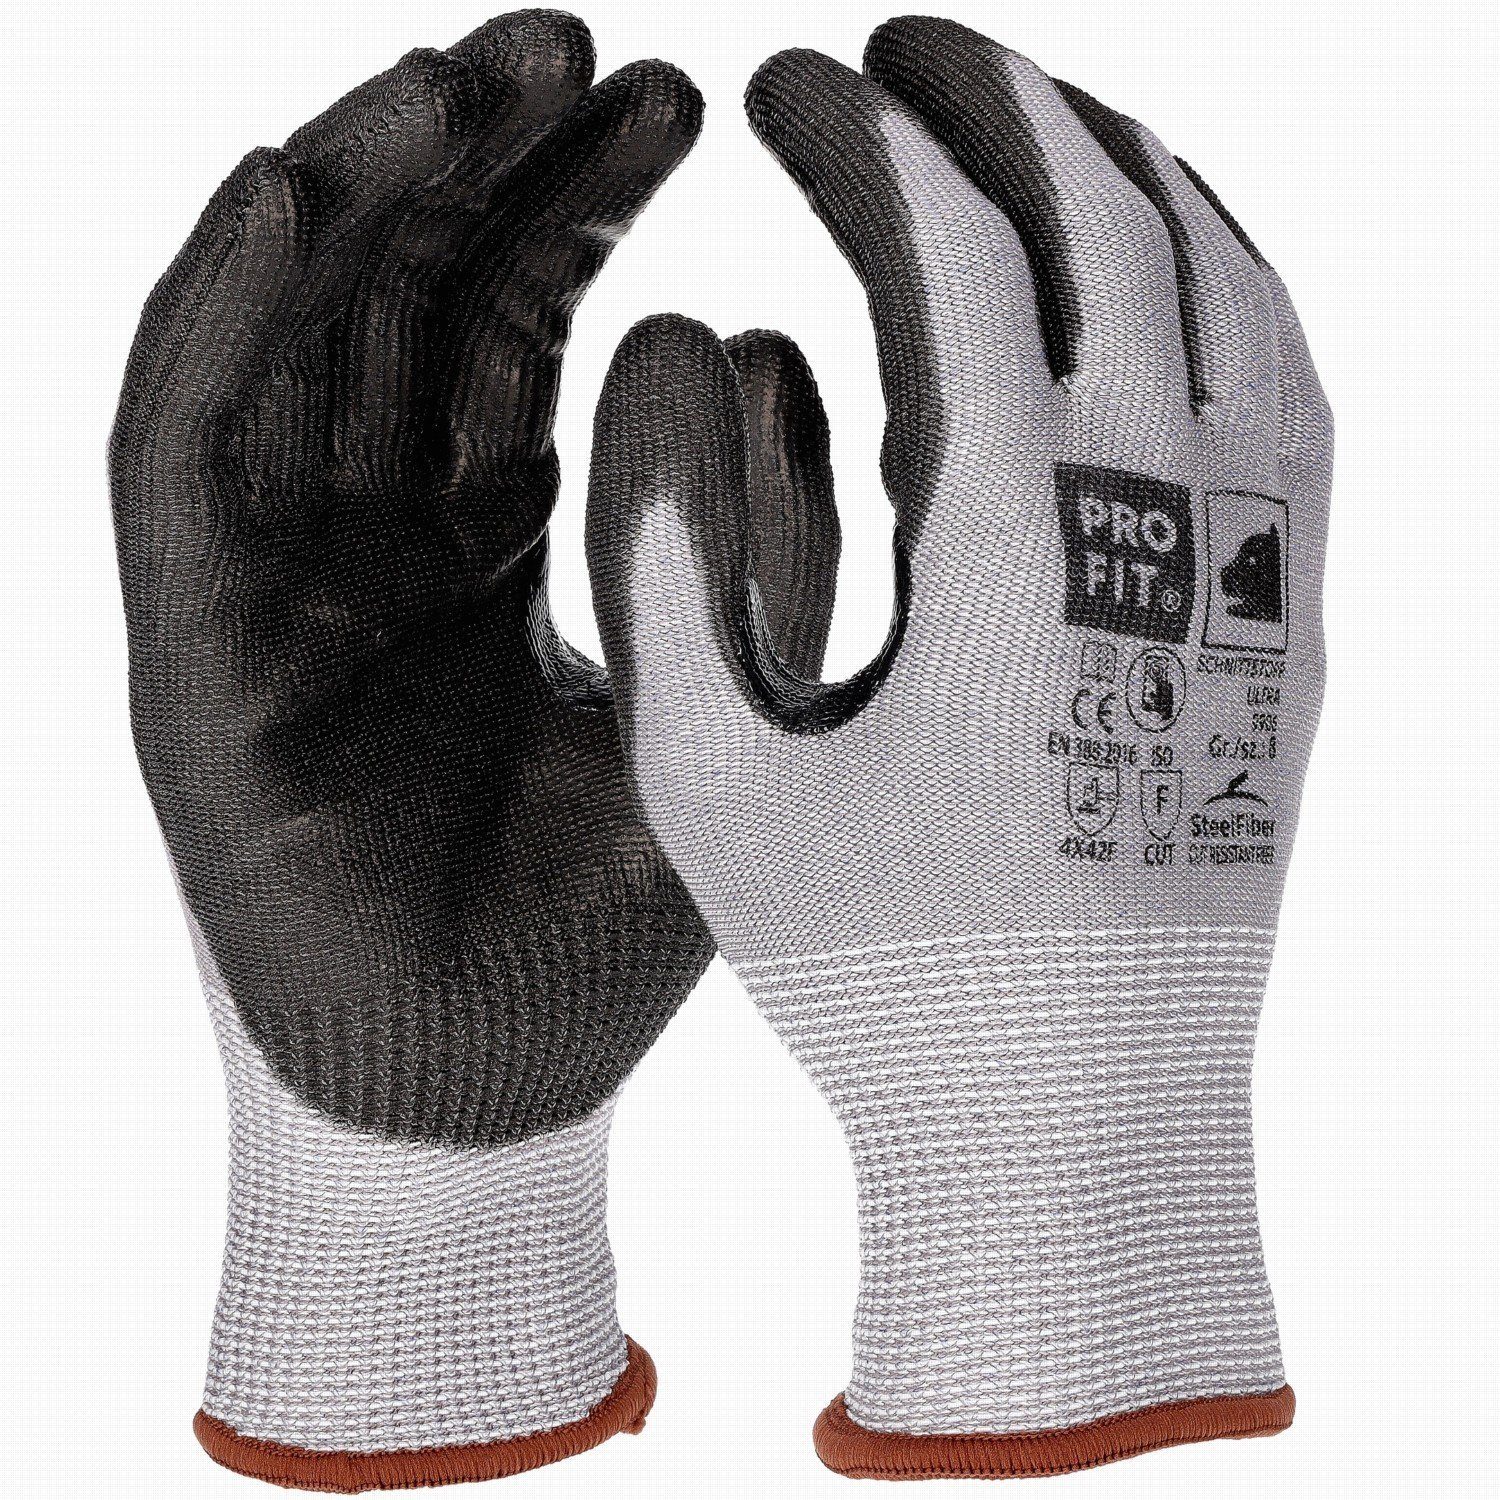 PRO FIT by Level Daumenbeugenverstärkung Mechaniker-Handschuhe PU-Schnittschutzhandschuh, F, Paar) ULTRA Fitzner (12